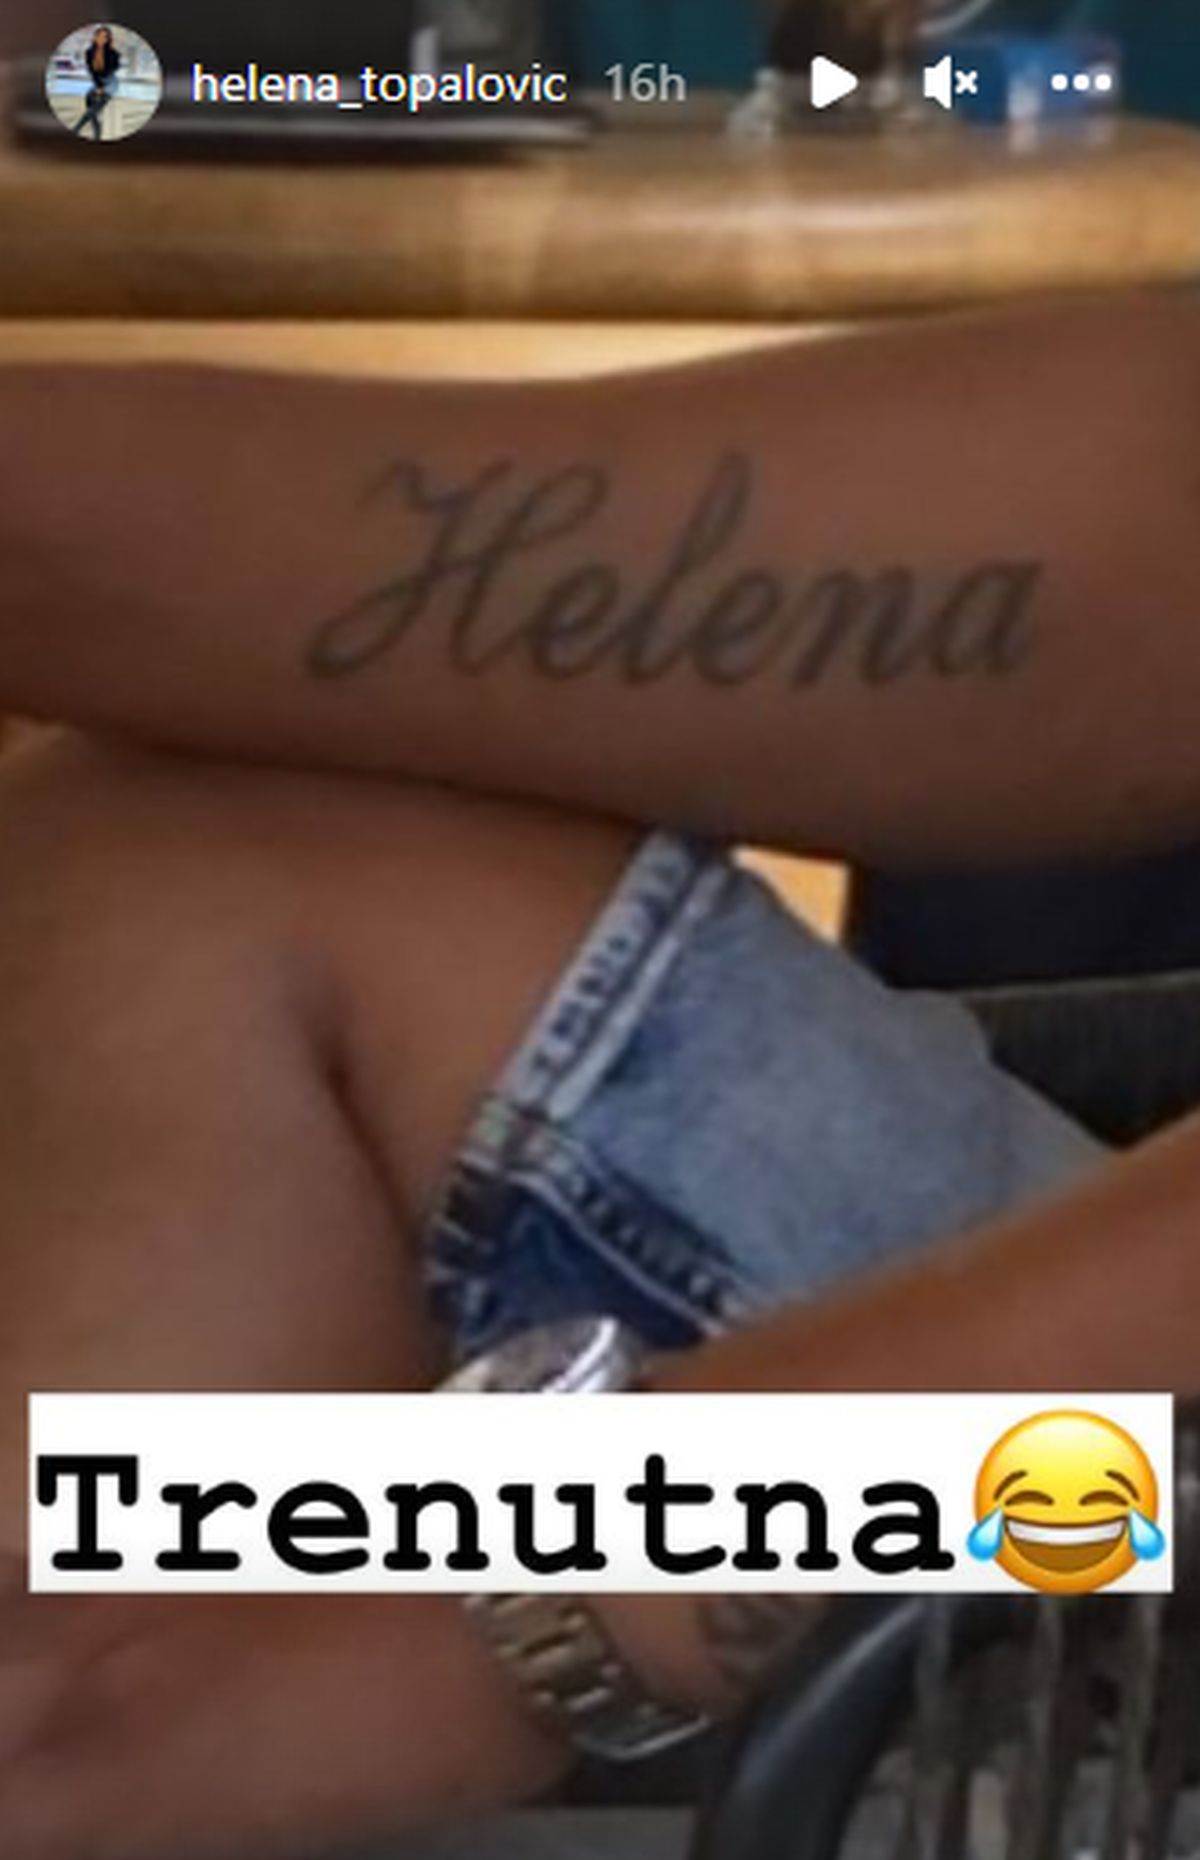  Helena Topalović se pohvalila OGROMNOM tetovažom njenog imena 